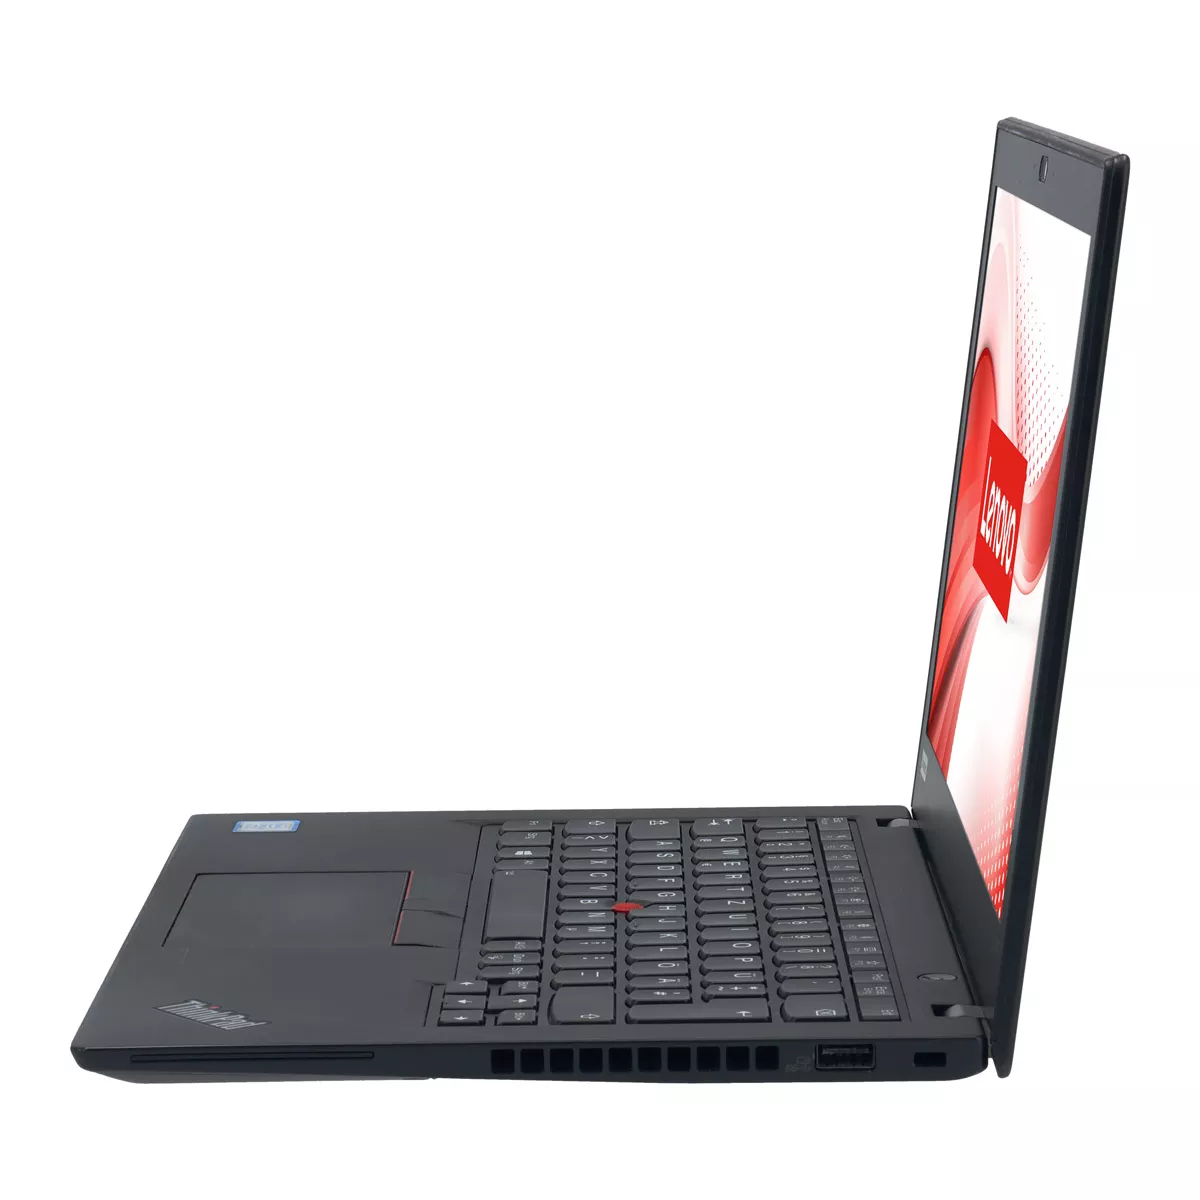 Lenovo ThinkPad X280 Core i5 7300U 8 GB 240 GB M.2 nVME SSD Webcam B